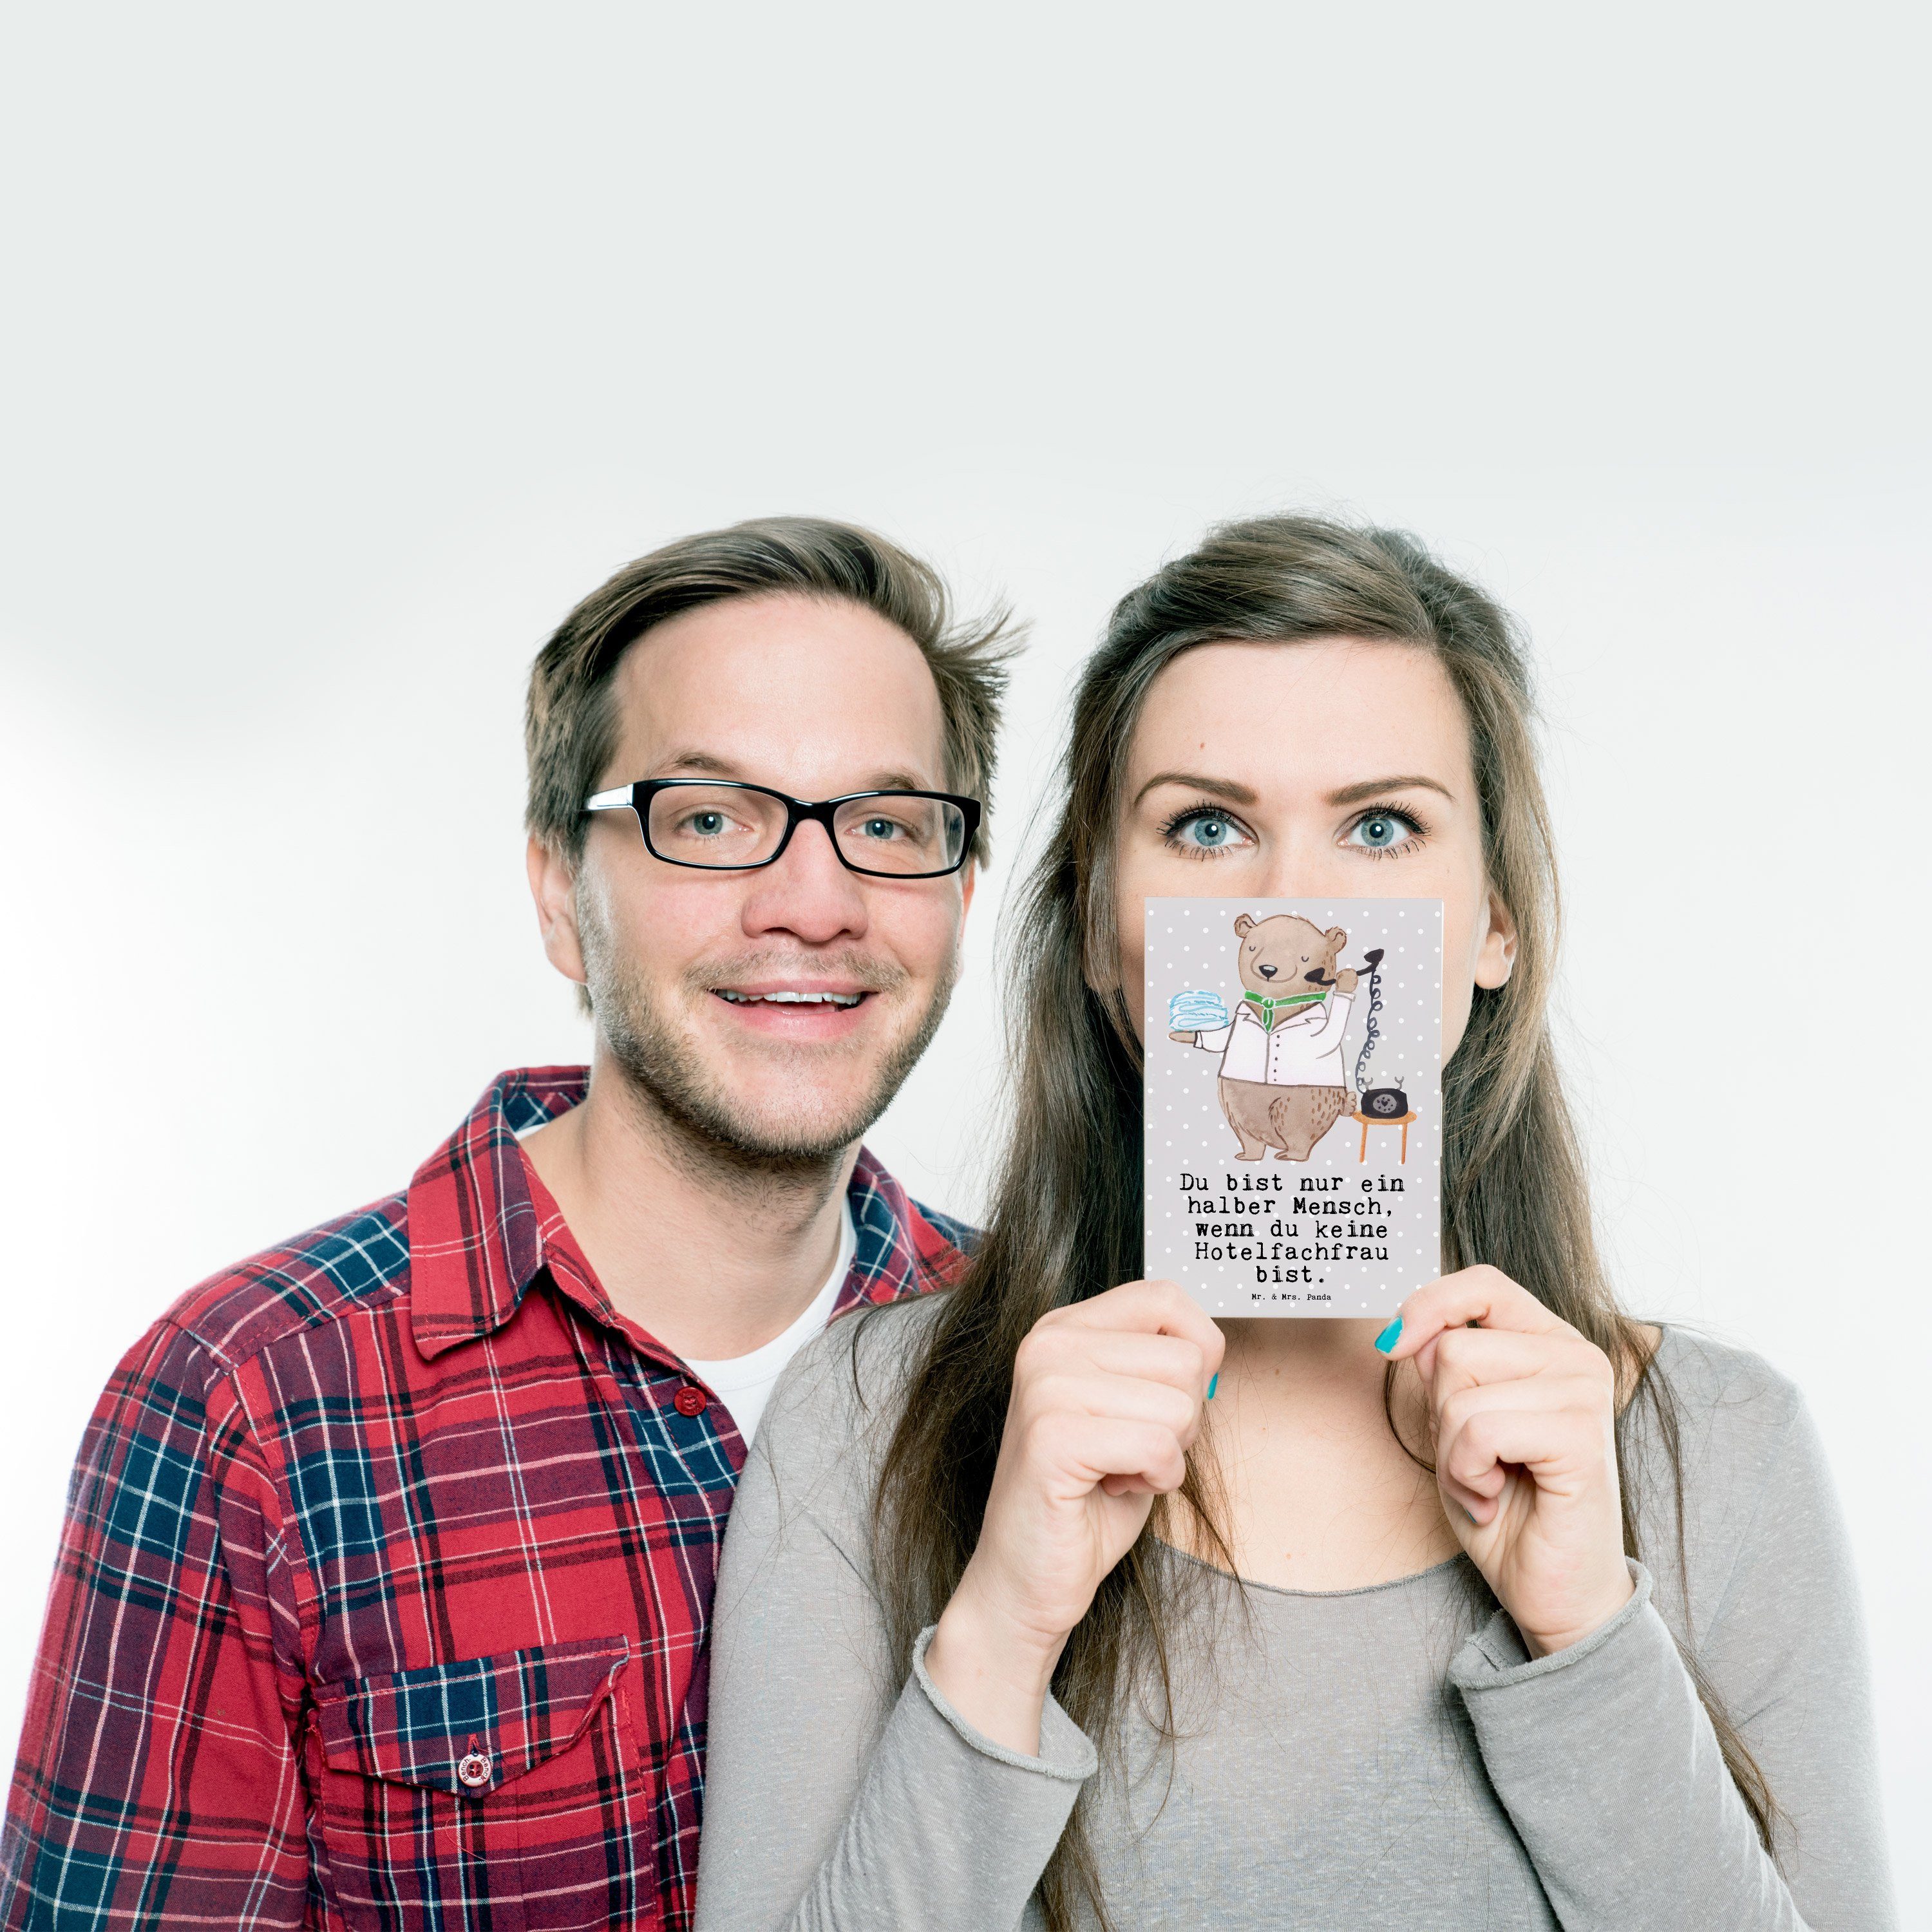 Mr. & Mrs. Panda - Hotelfachfrau Geburtstagskarte, Pastell Grau F Postkarte - Herz mit Geschenk